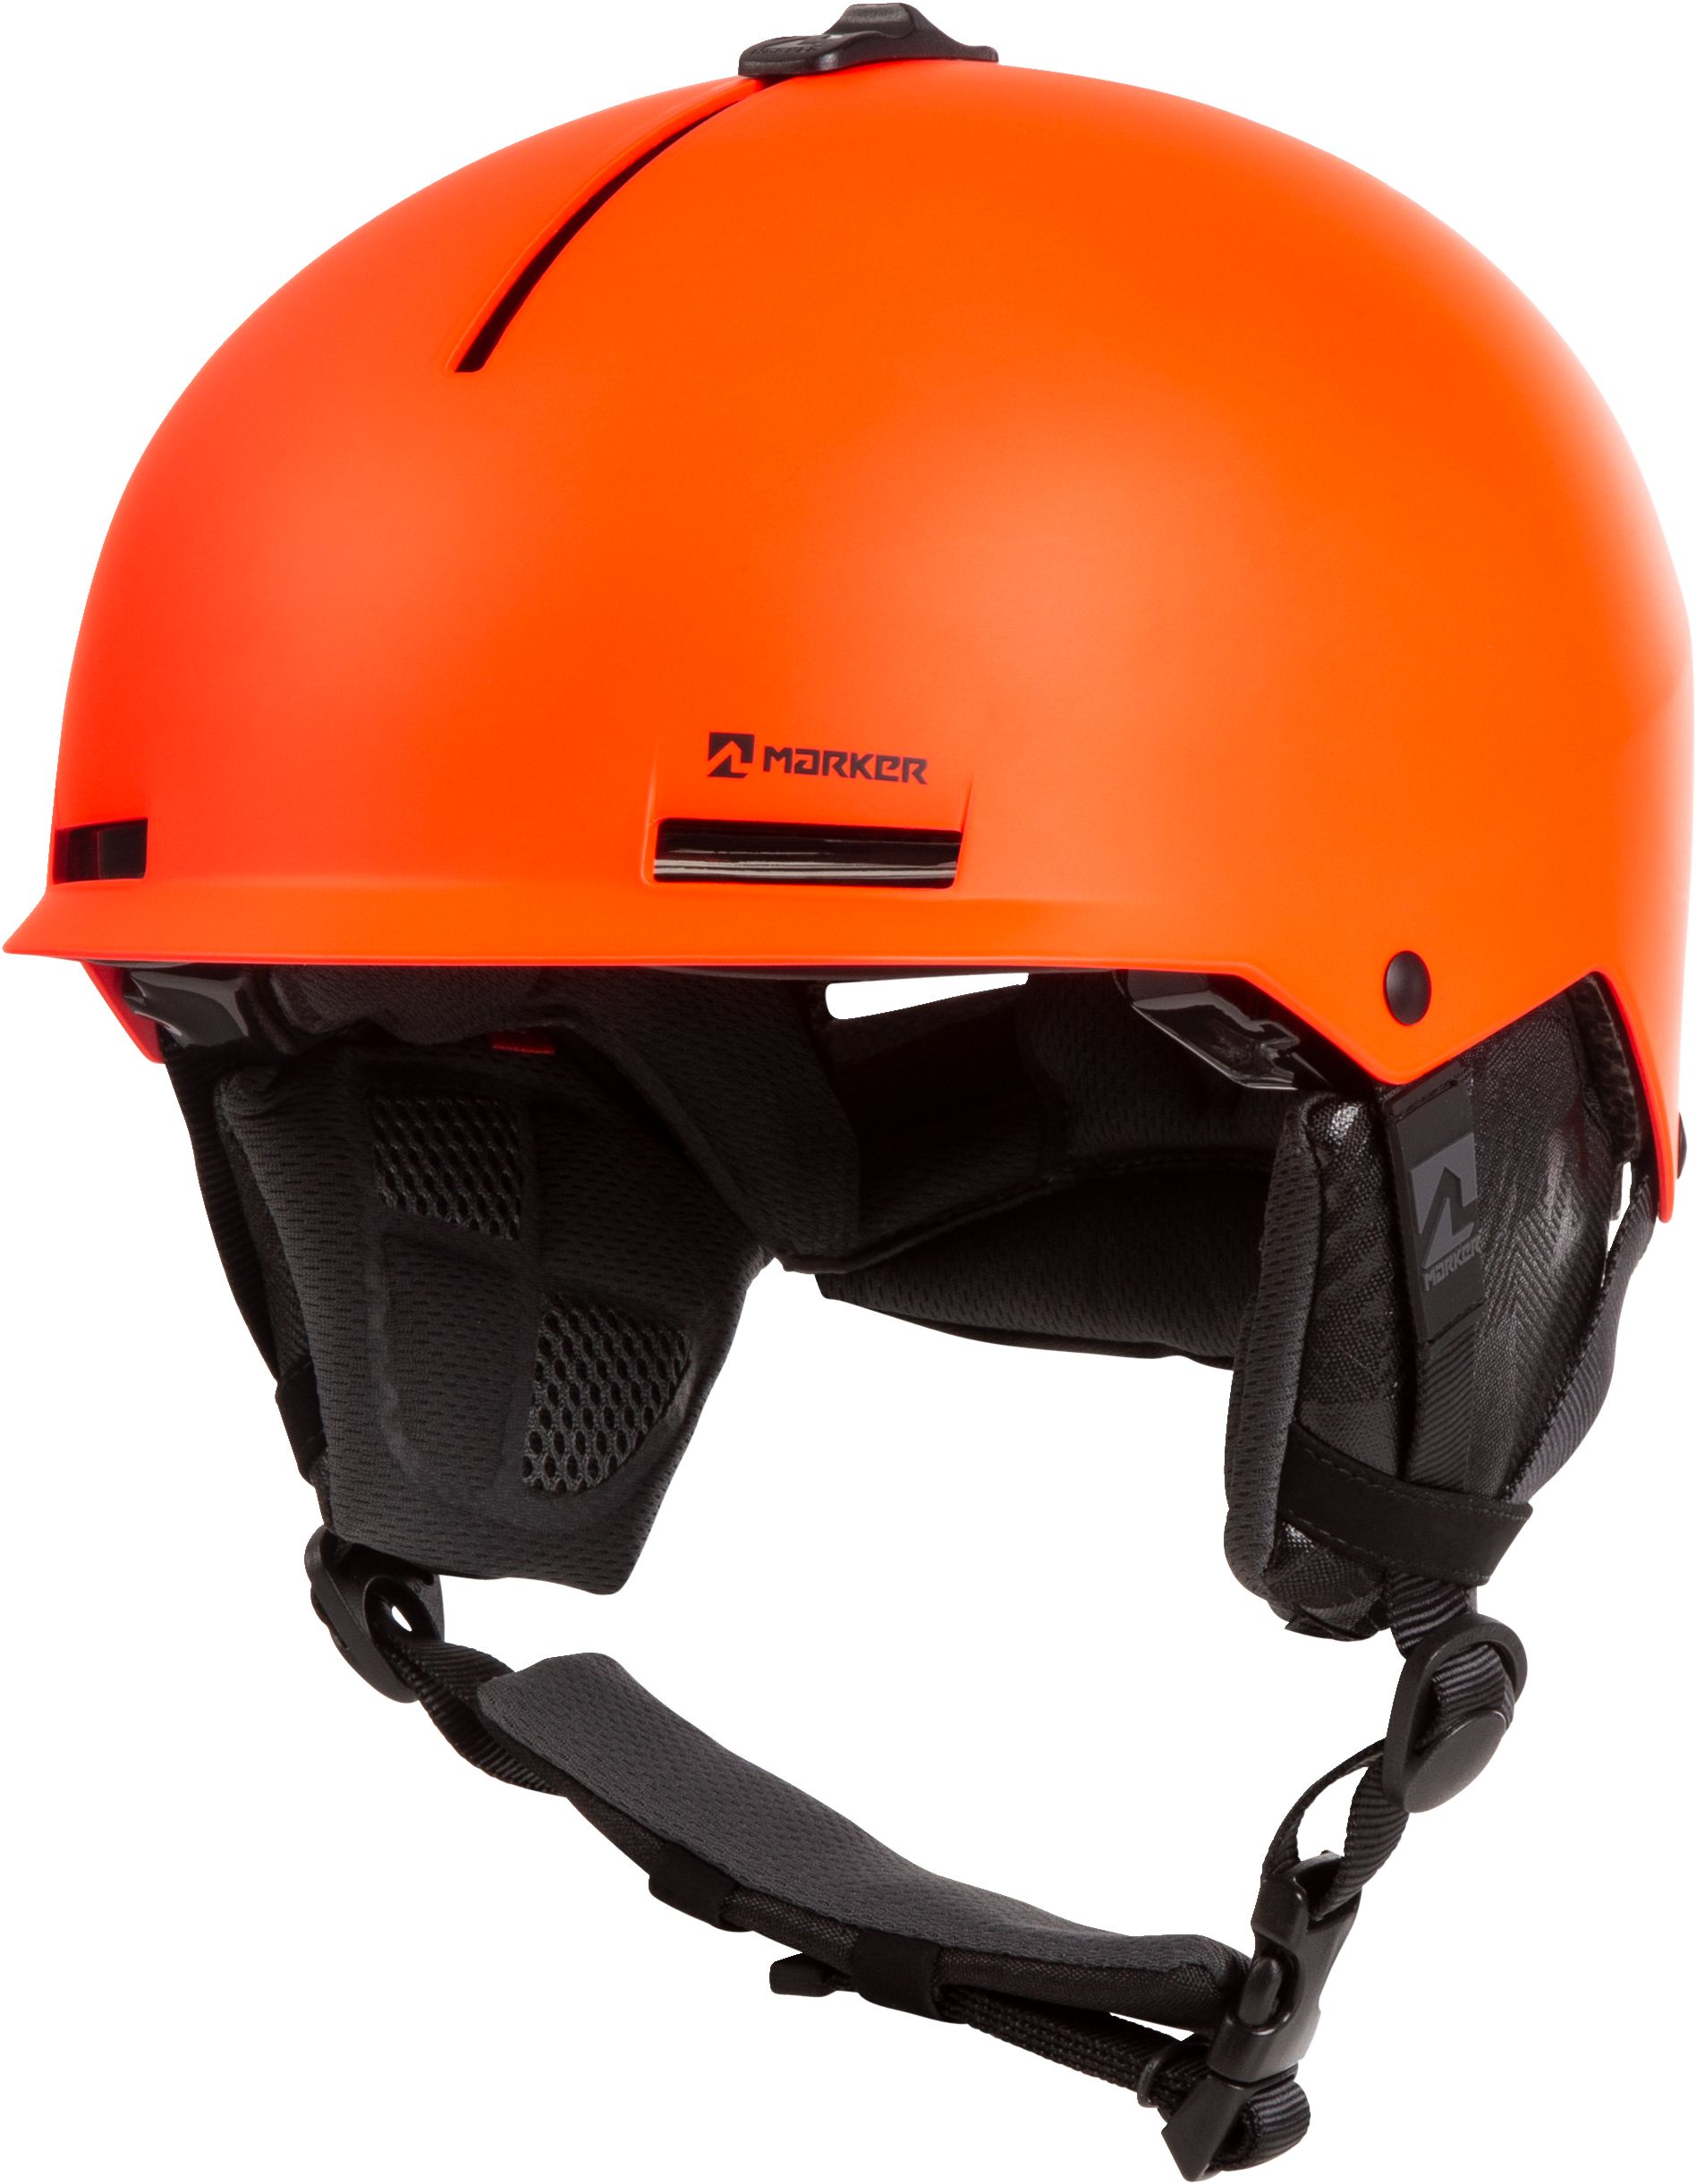 Marker Vijo Junior Ski & Snowboard Helmet 2019/20 - Infrared | SportChek